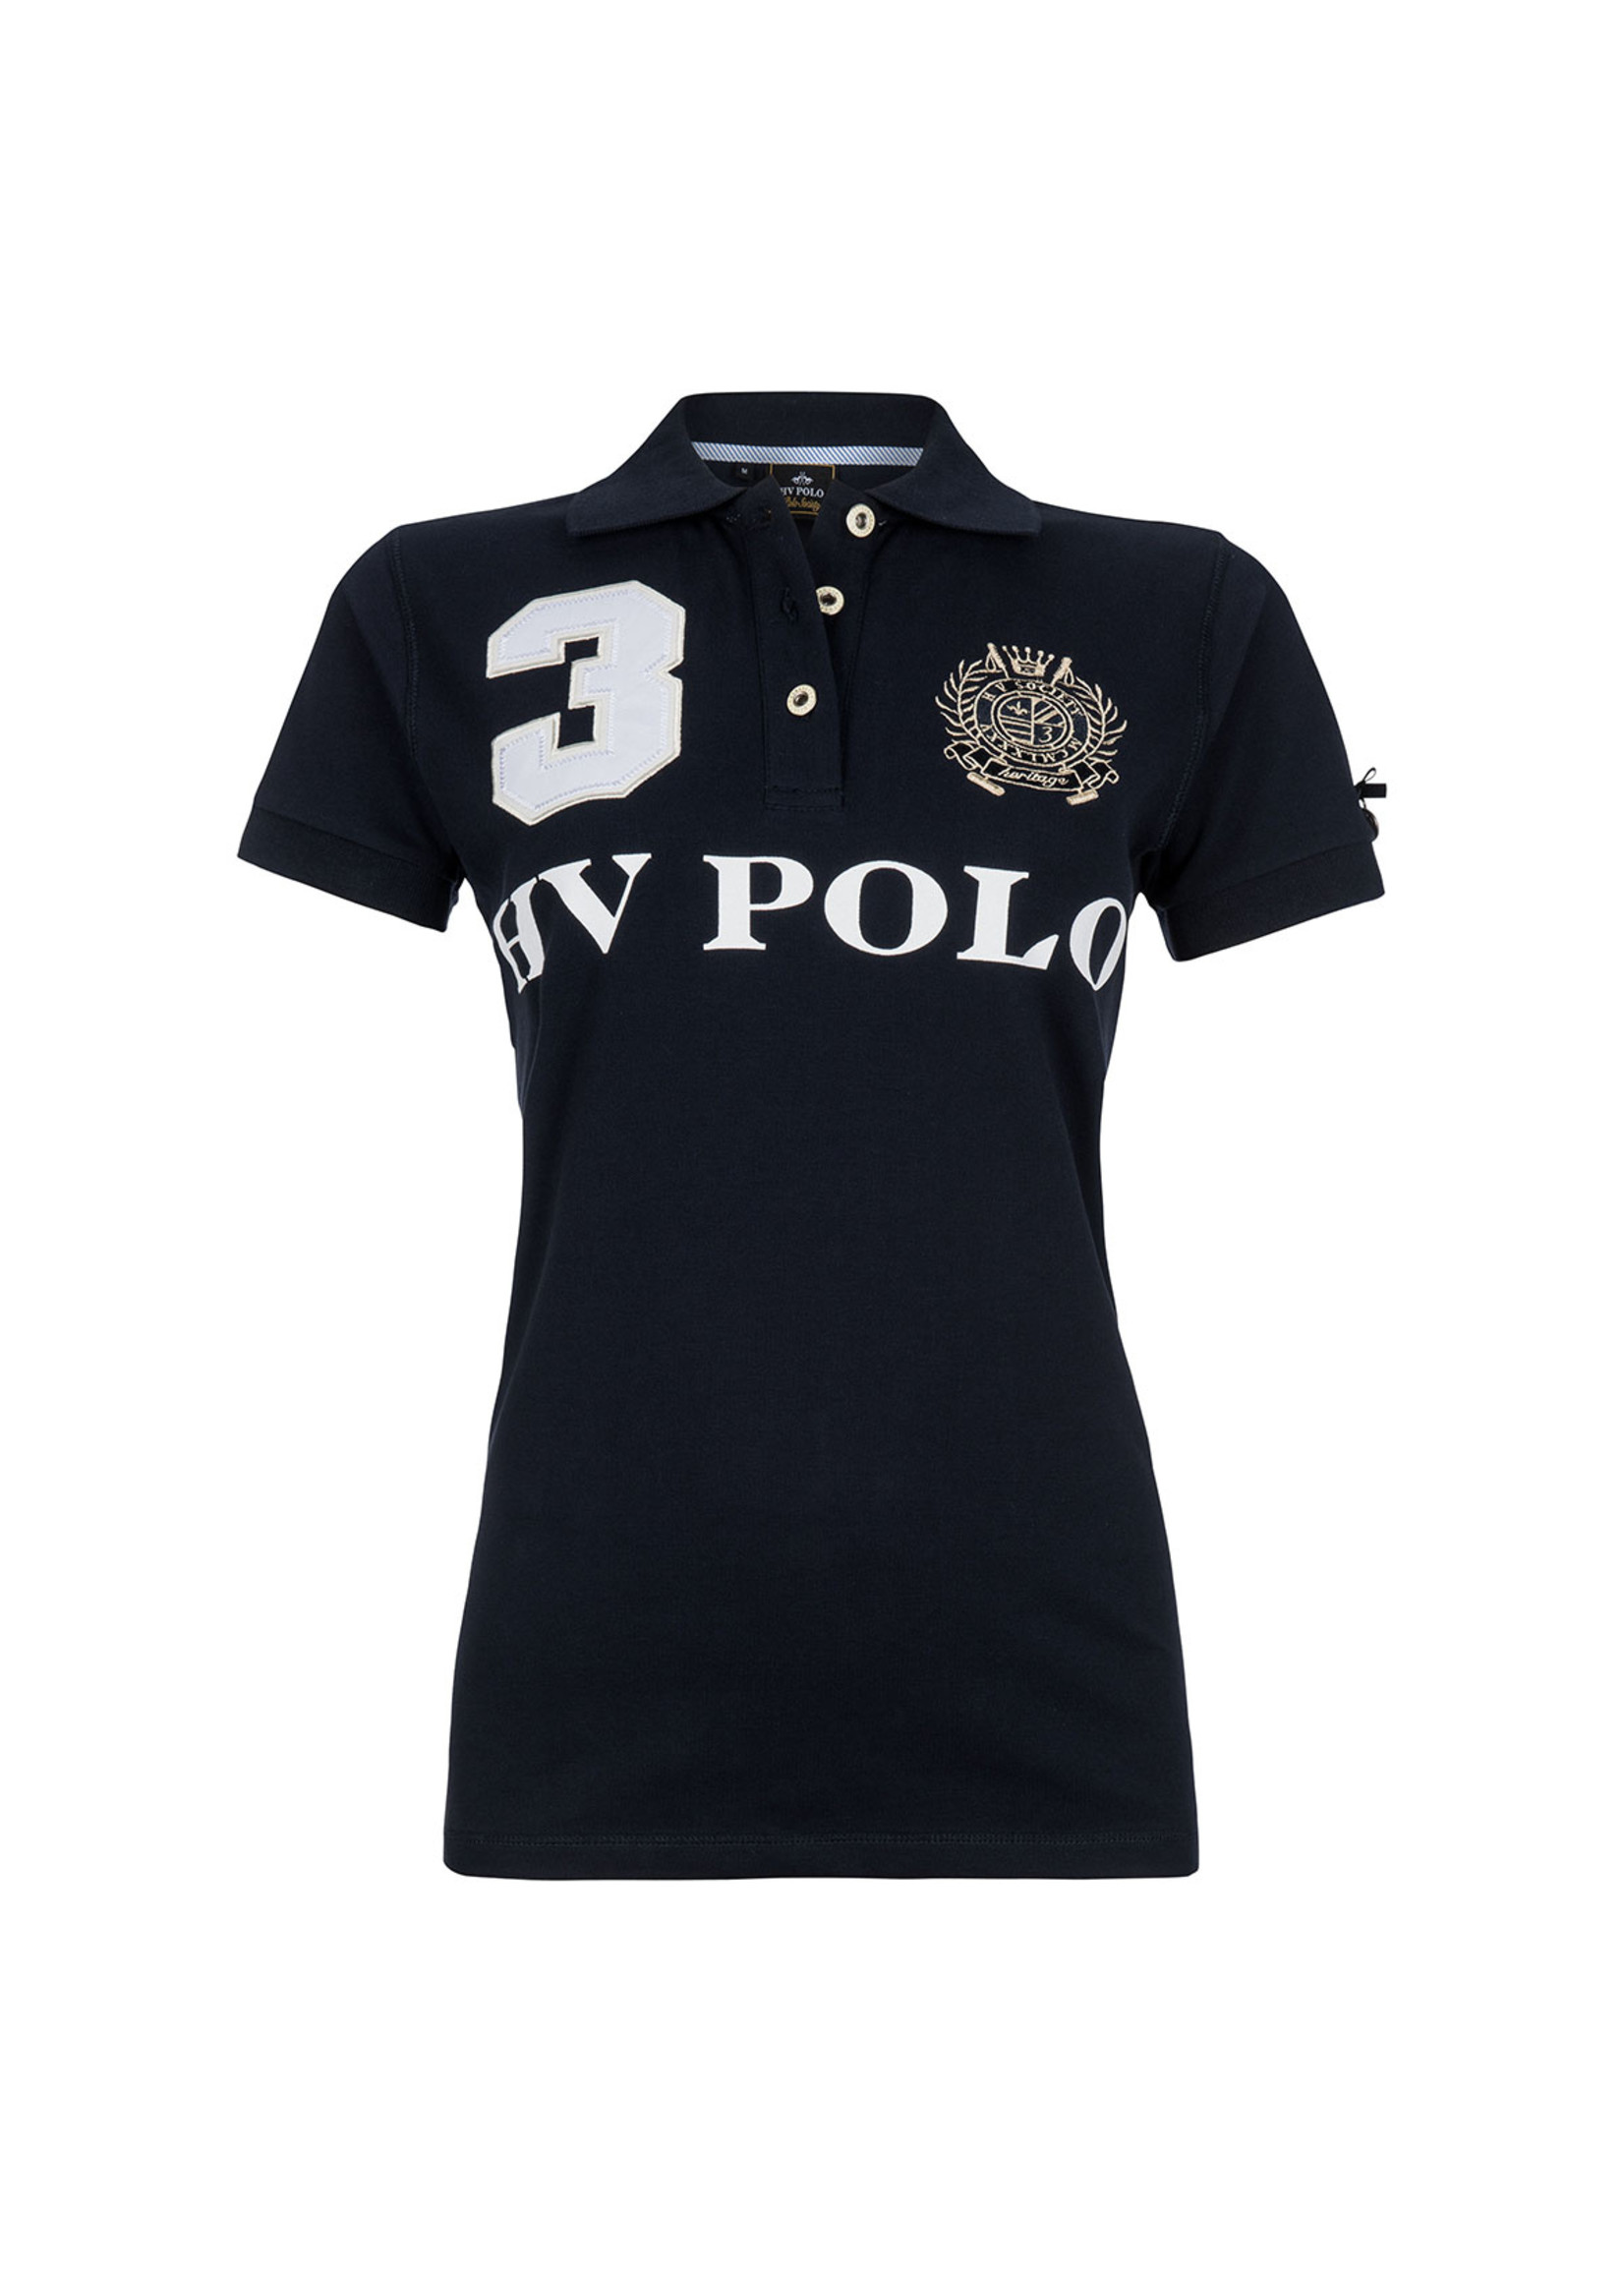 HV Polo Polo shirt Favouritas HV Polo